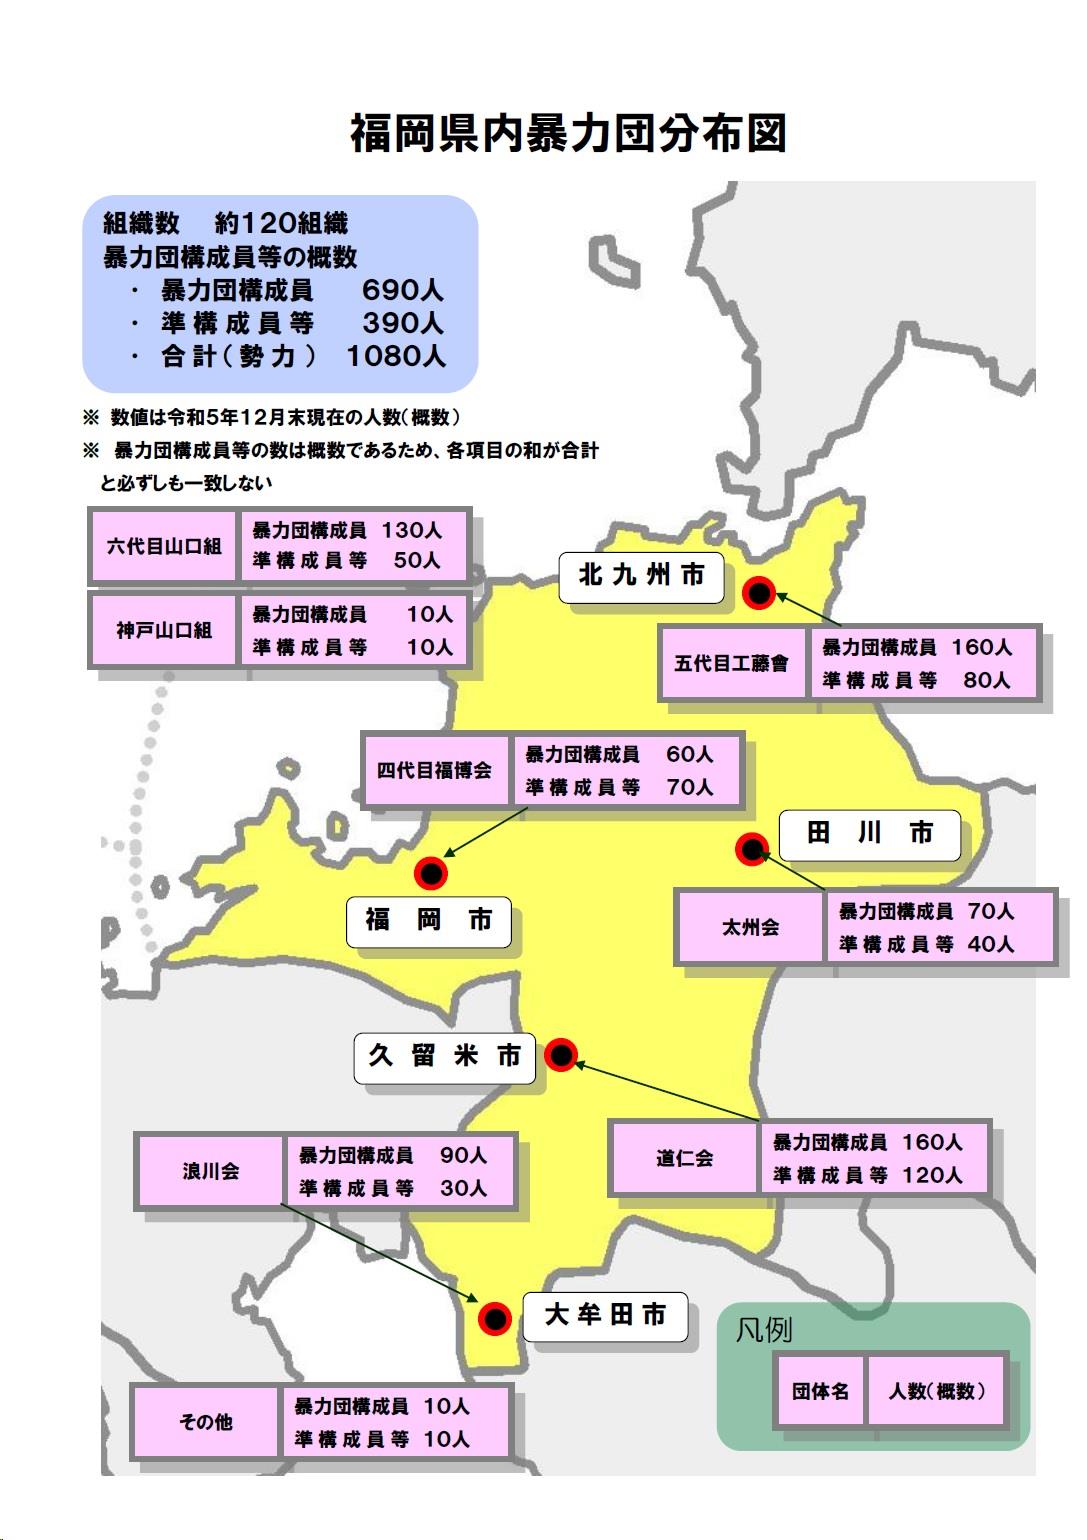 福岡県内の暴力団分布図